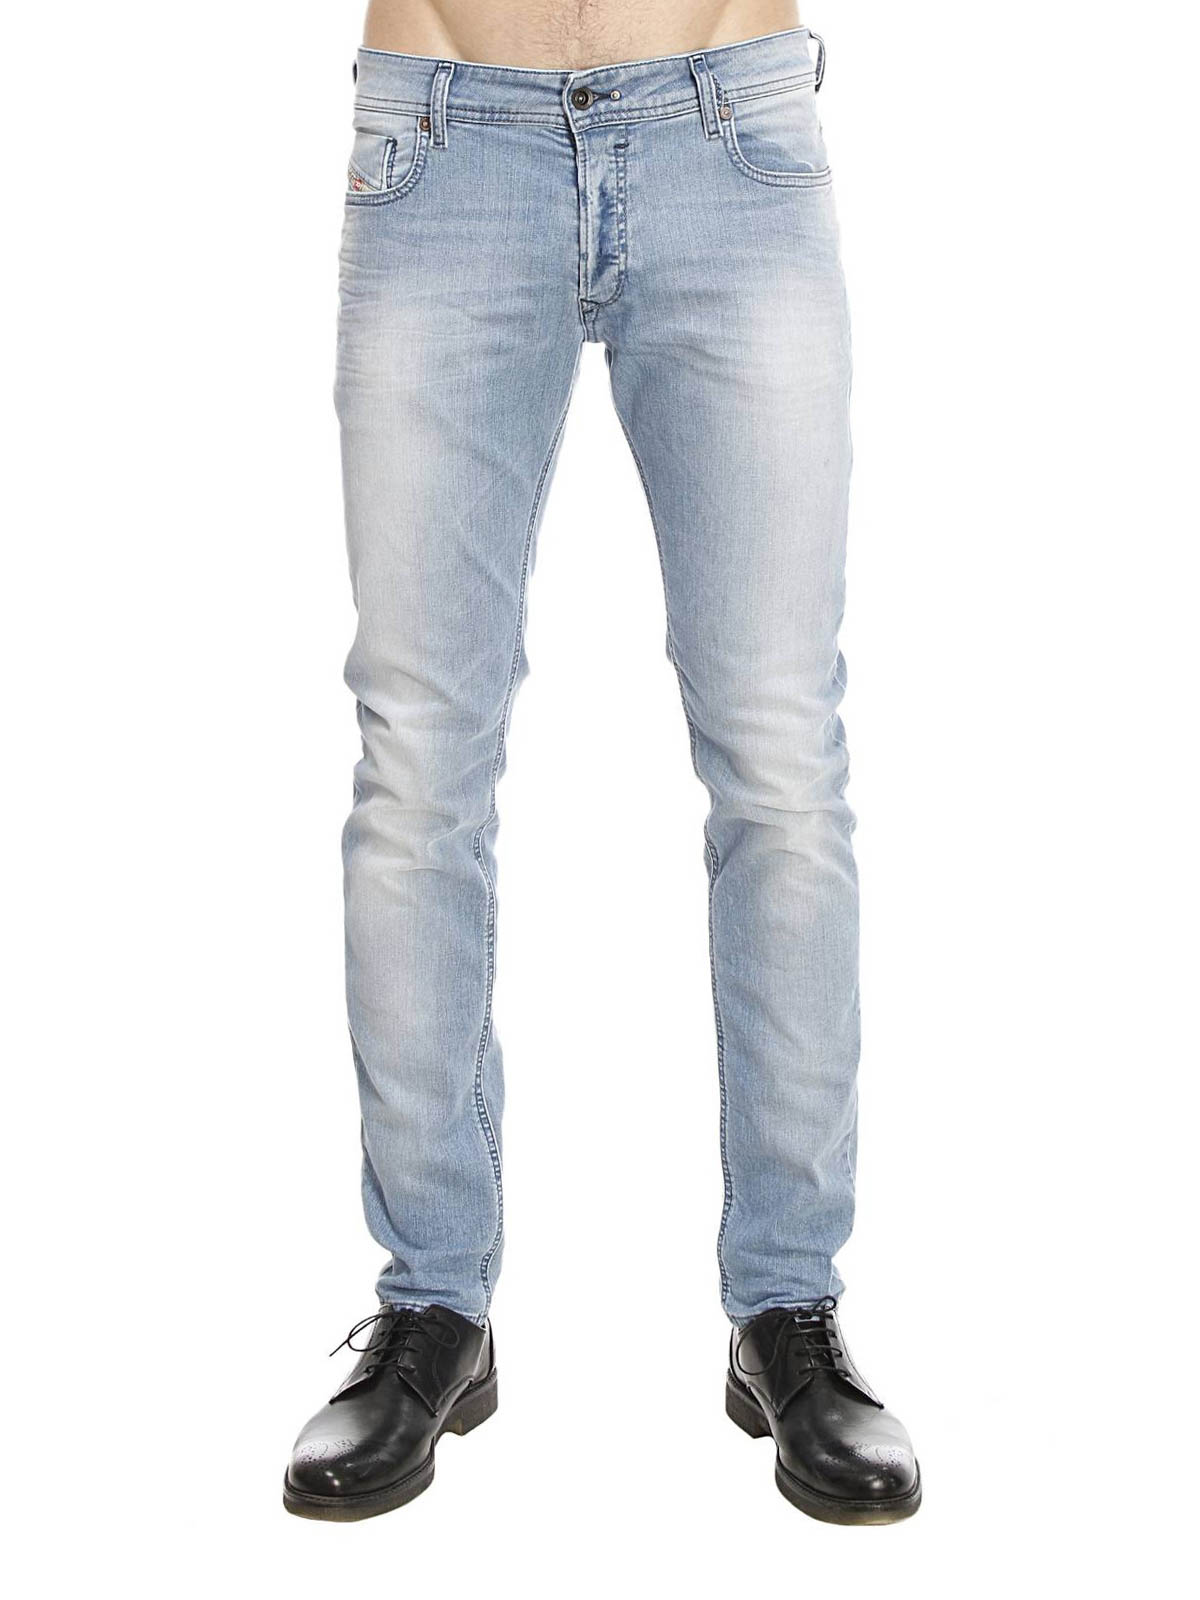 Skinny jeans Diesel - Sleenker slim - 00S7VG673E01 iKRIX.com